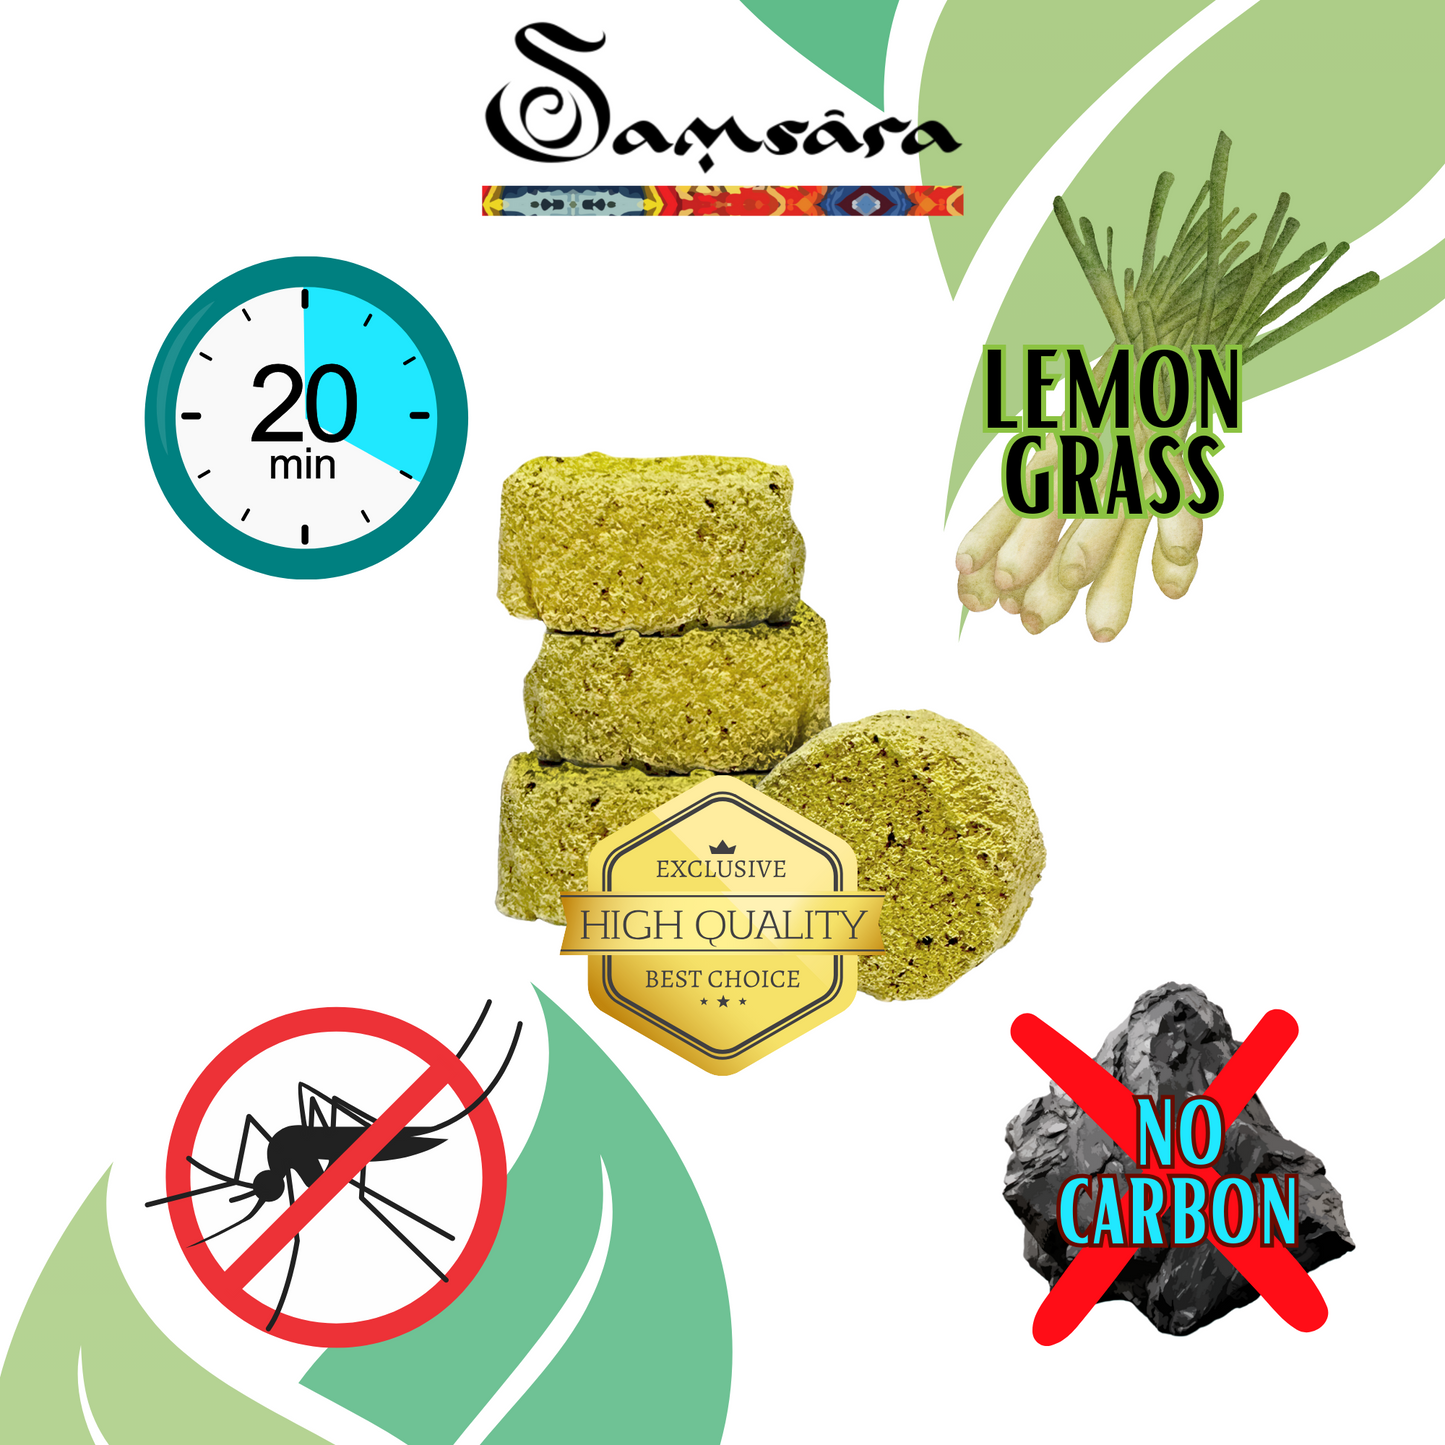 Samsara Carboncini per Incenso ANTIZANZARE alla Citronella | NO CARBONE, NO additivi chimici e volatili | NO MOSQUITOS - 100% Naturali (24 CARBONCINI)